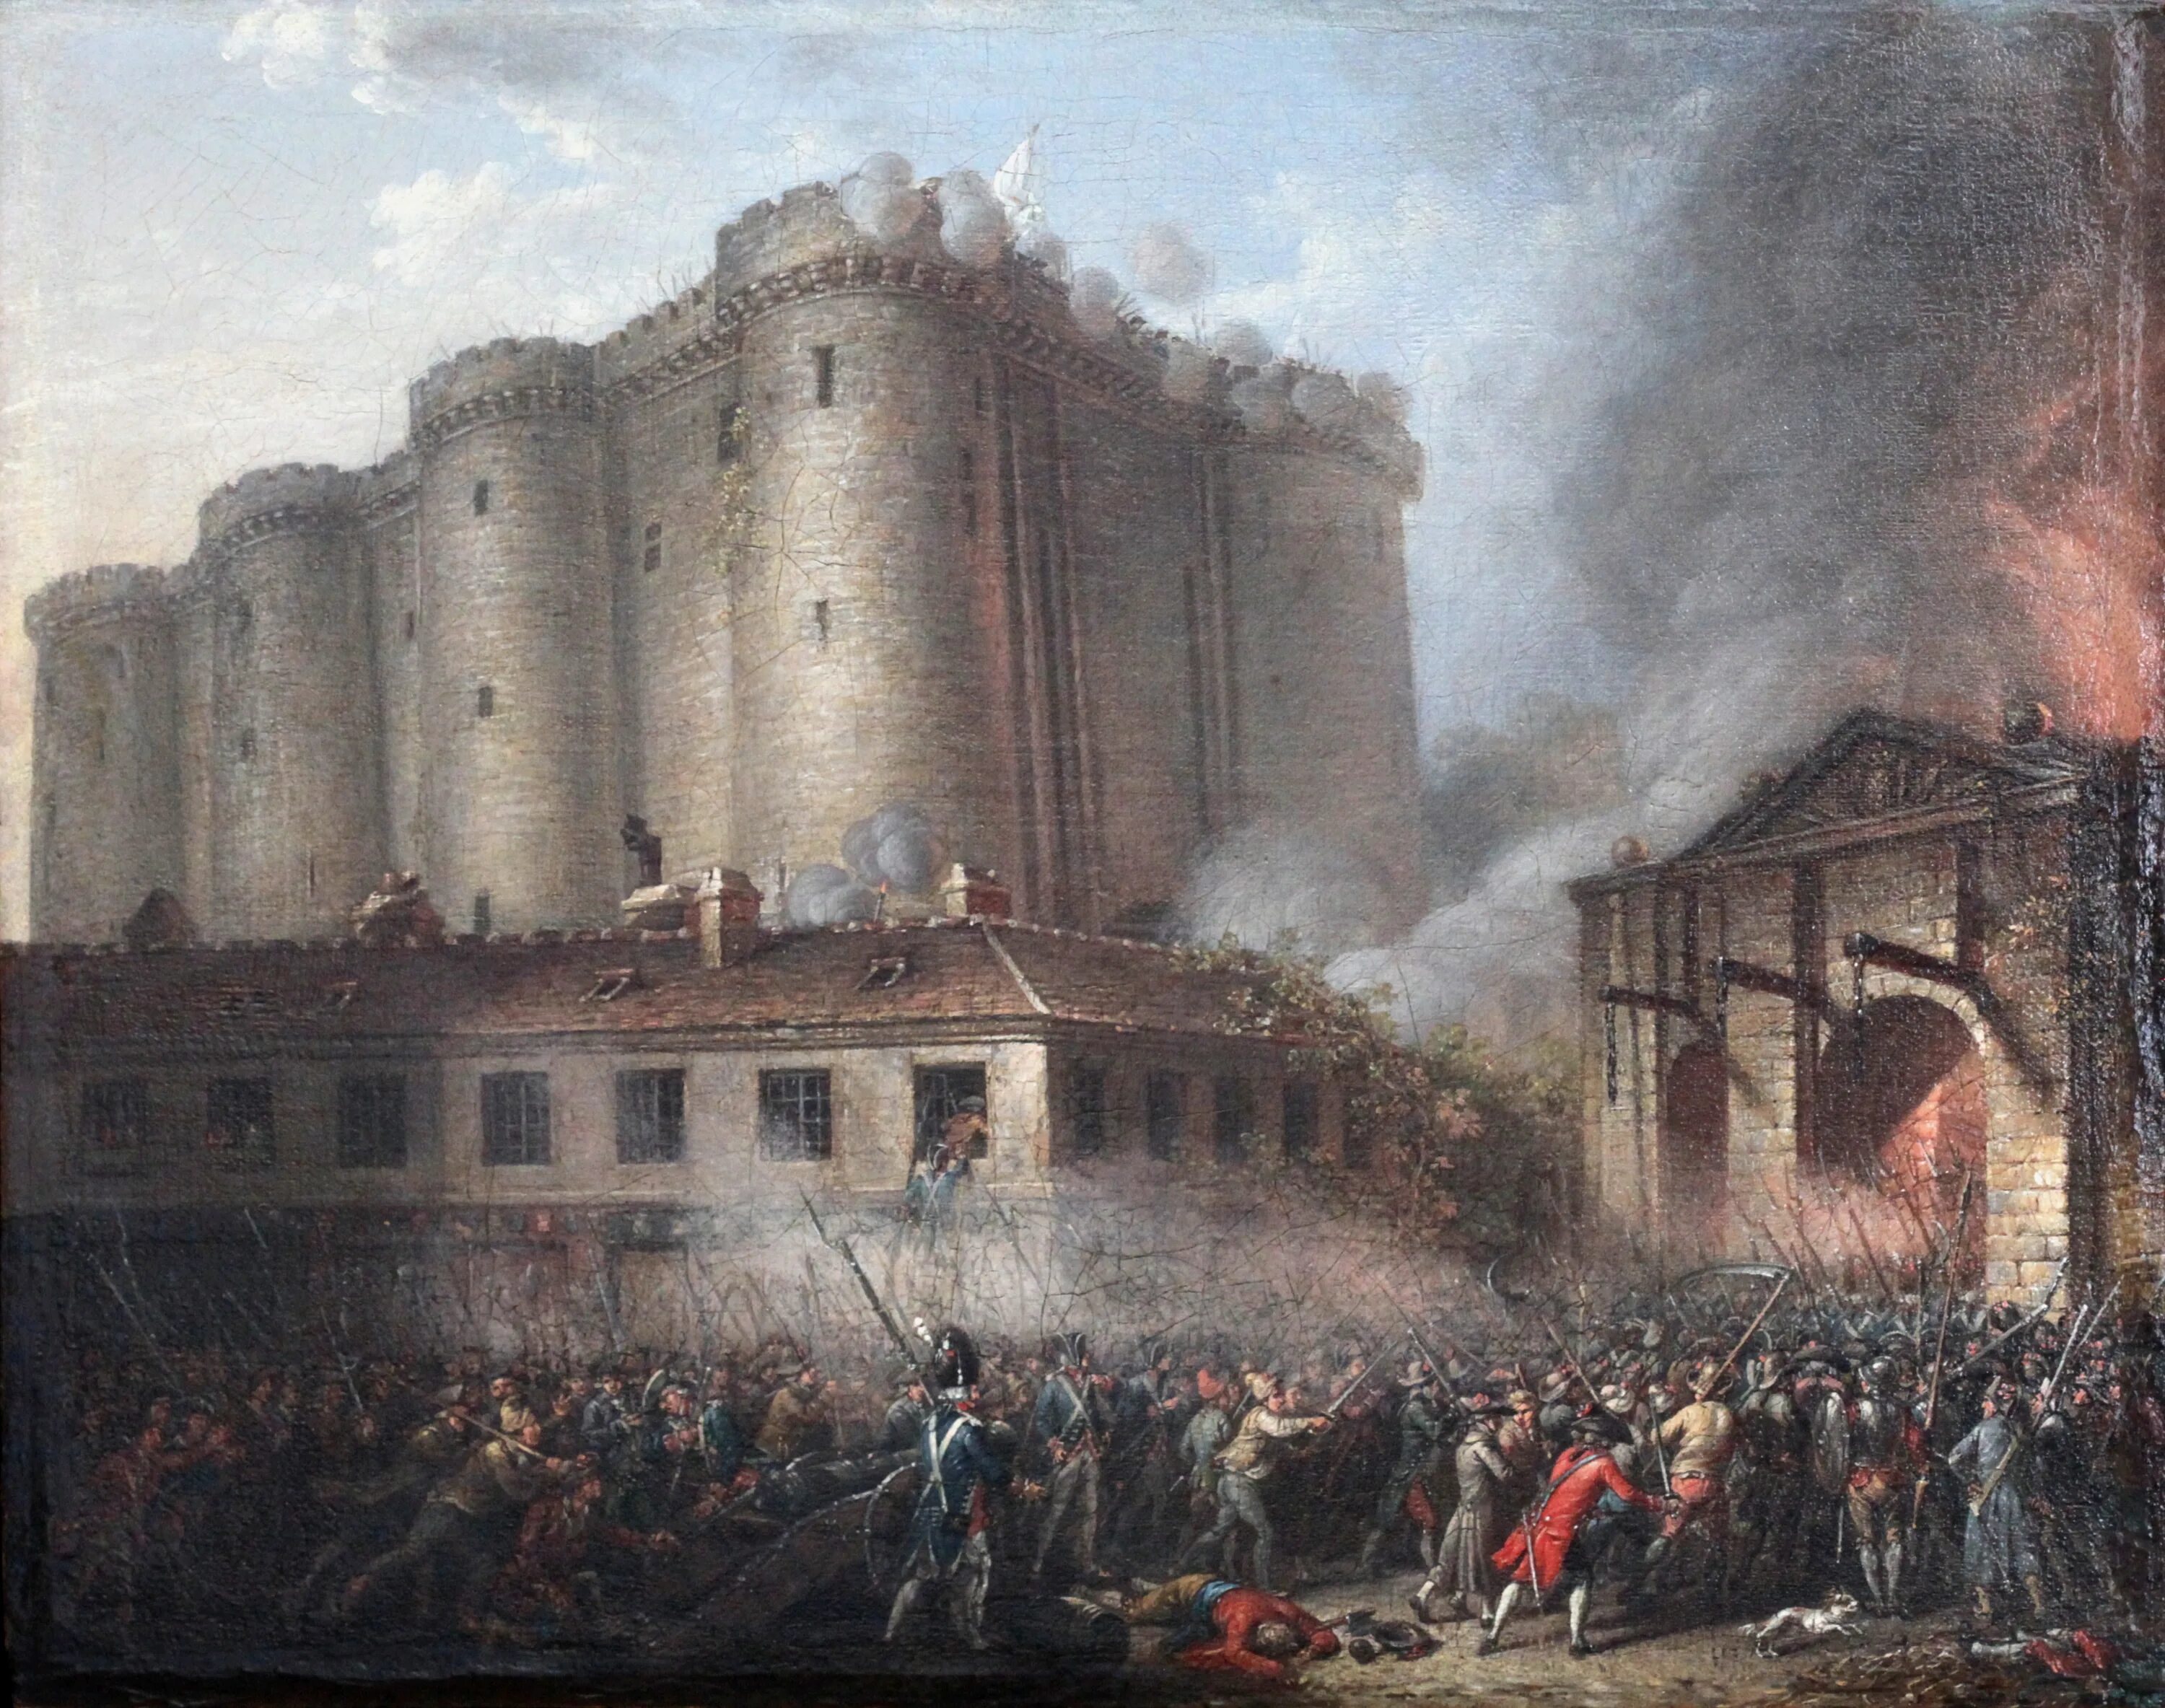 Франция пала. Штурм Бастилии 14 июля 1789 года. Великая французская революция взятие Бастилии. Крепость Бастилия 14 июля 1789. Французская революция взятие Бастилии 1789.